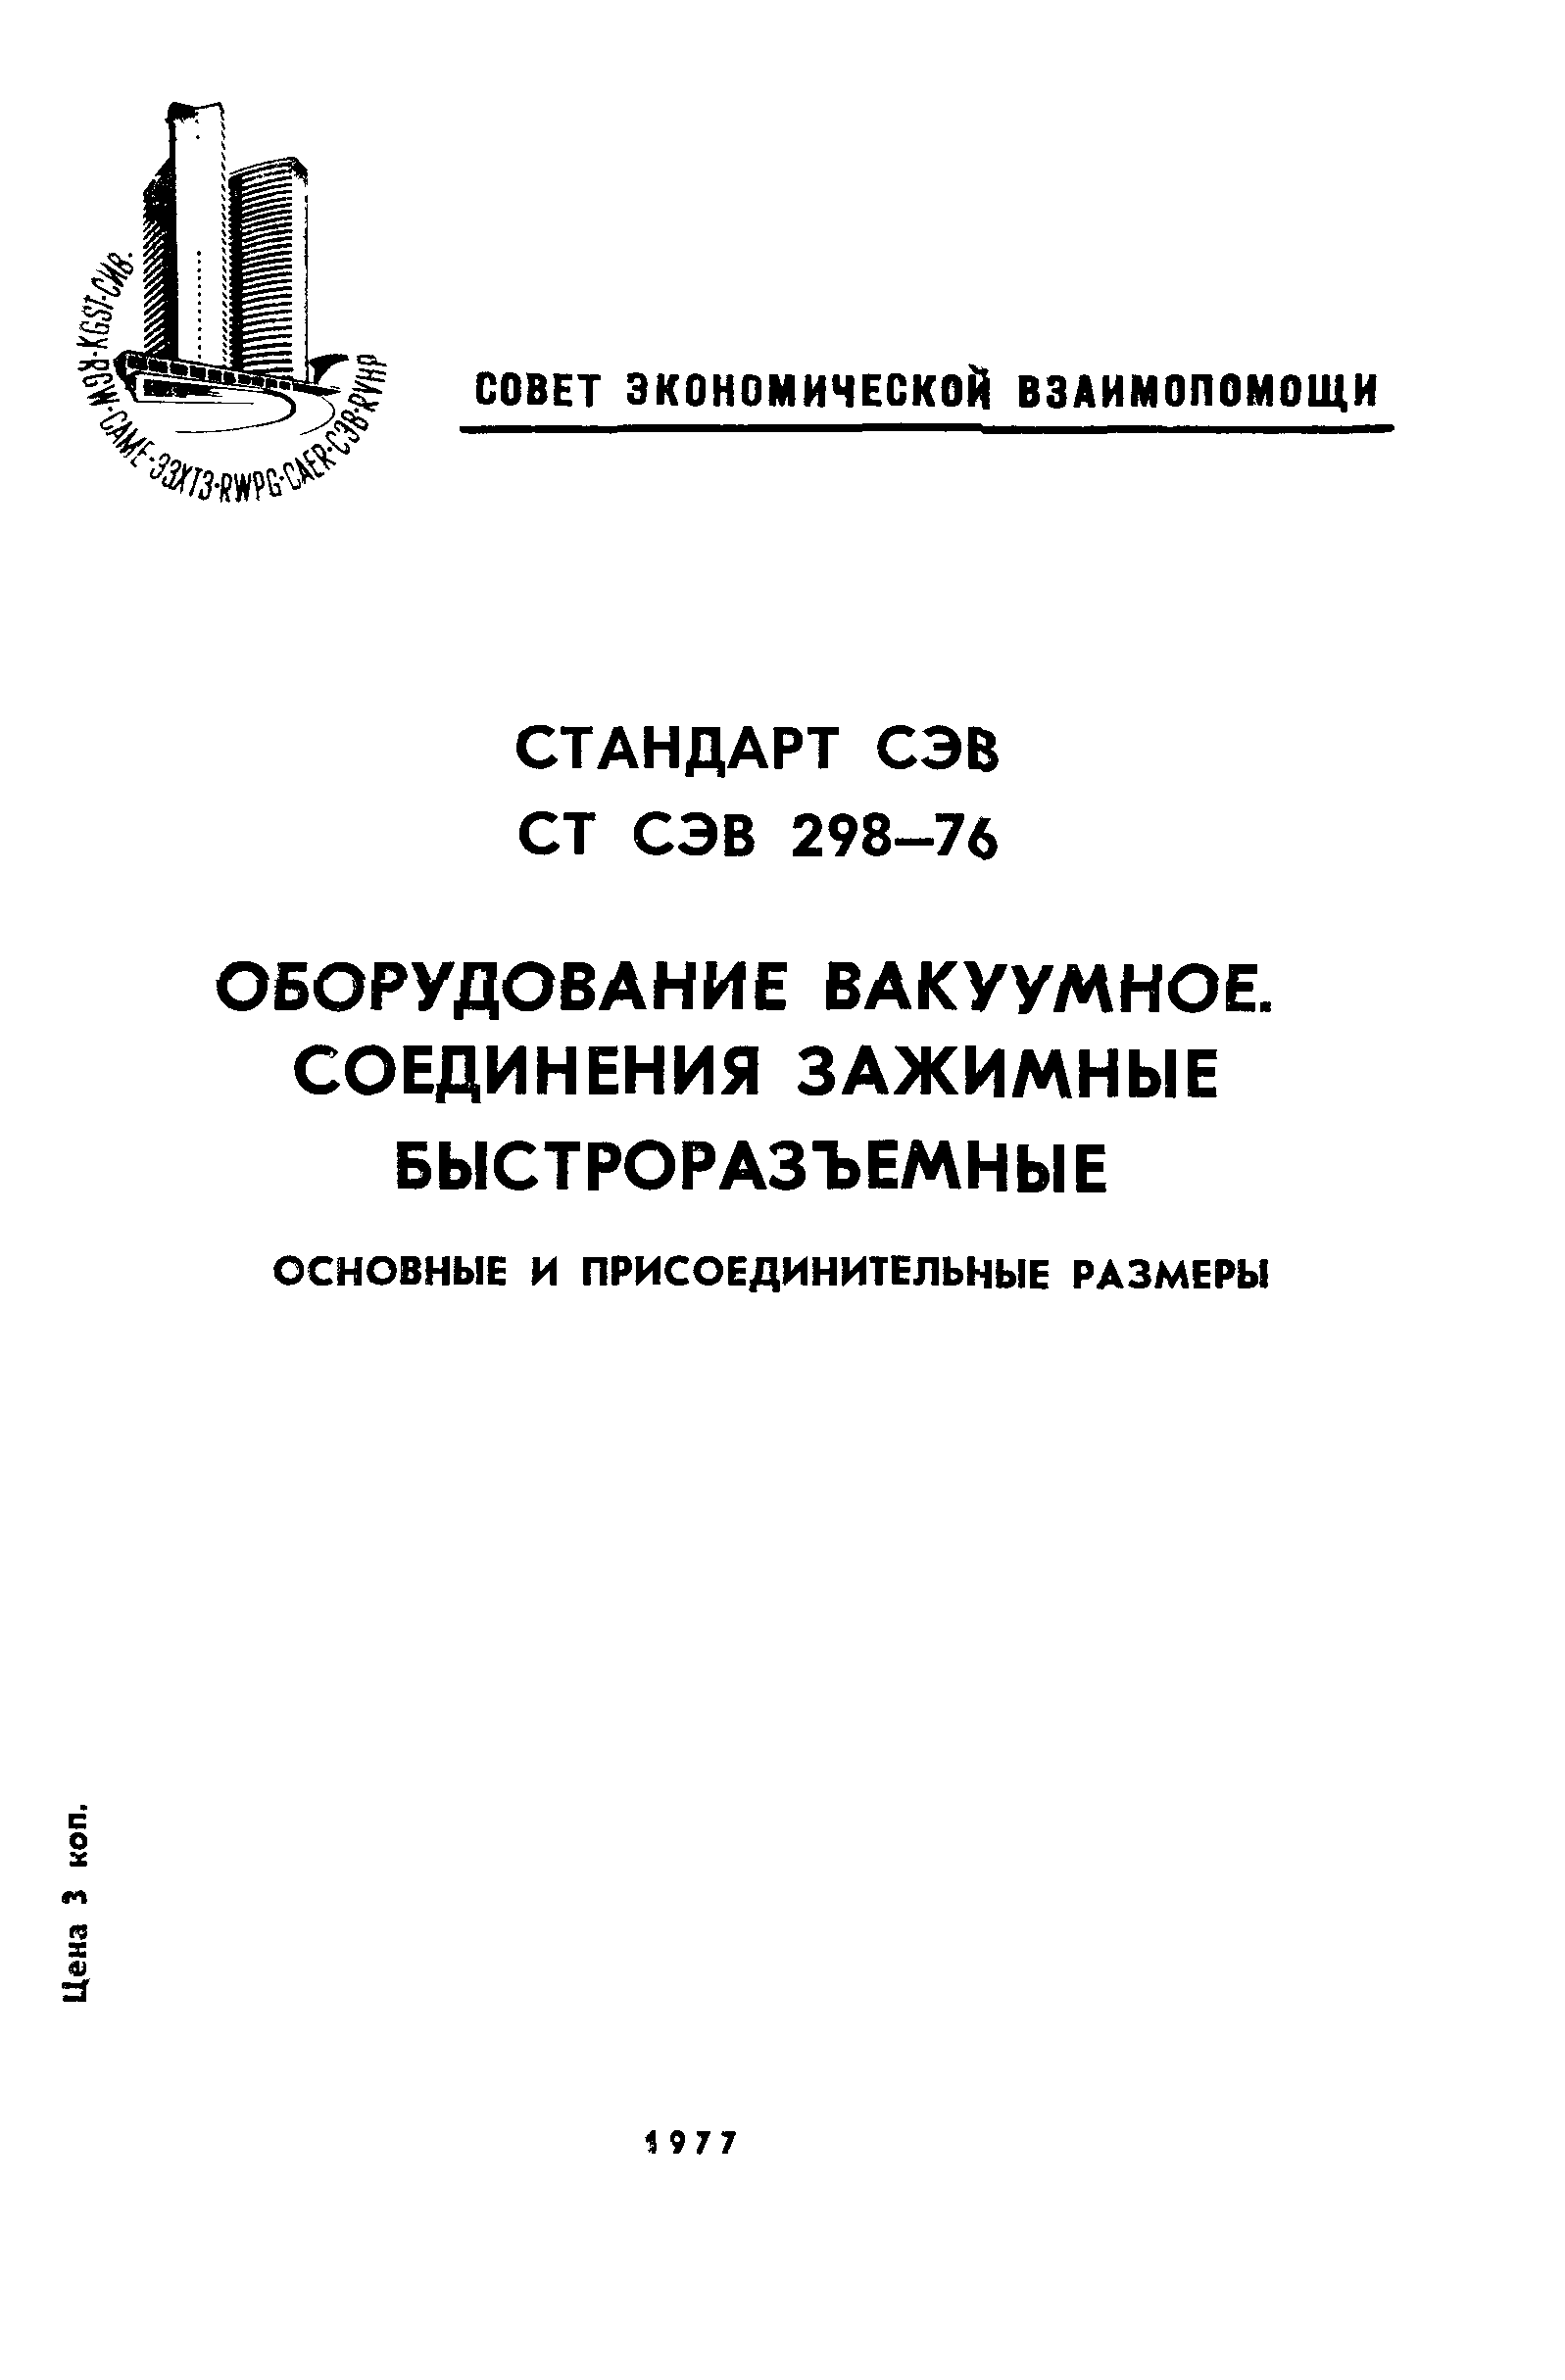 СТ СЭВ 298-76